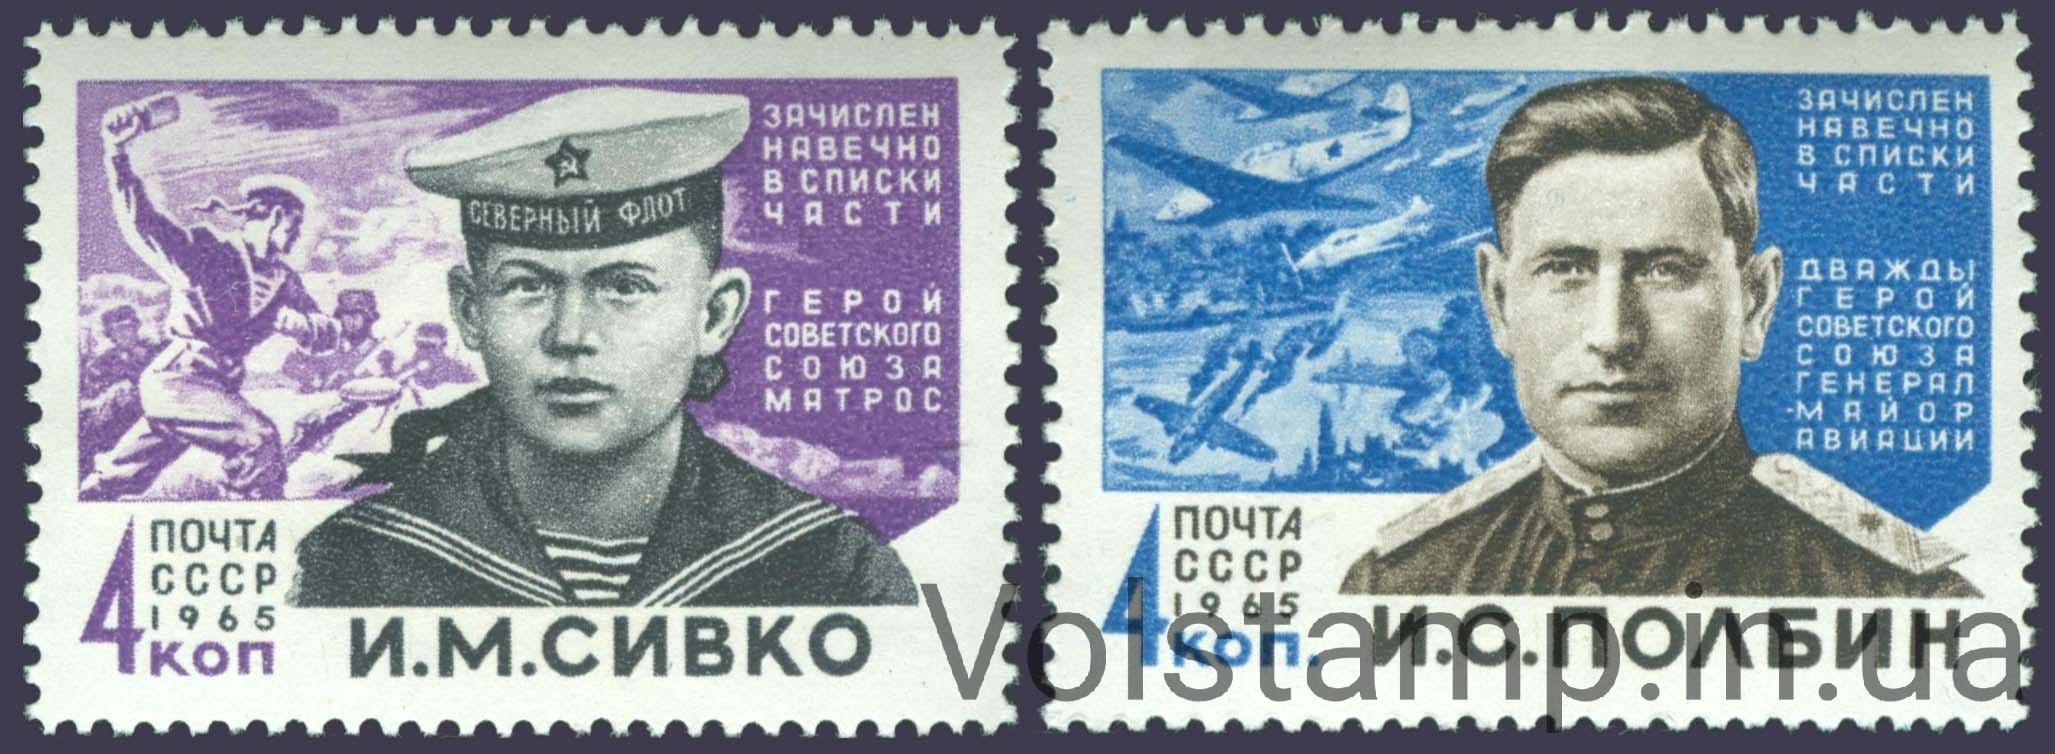 1965 серия марок Герои Великой Отечественной войны №3065-3066